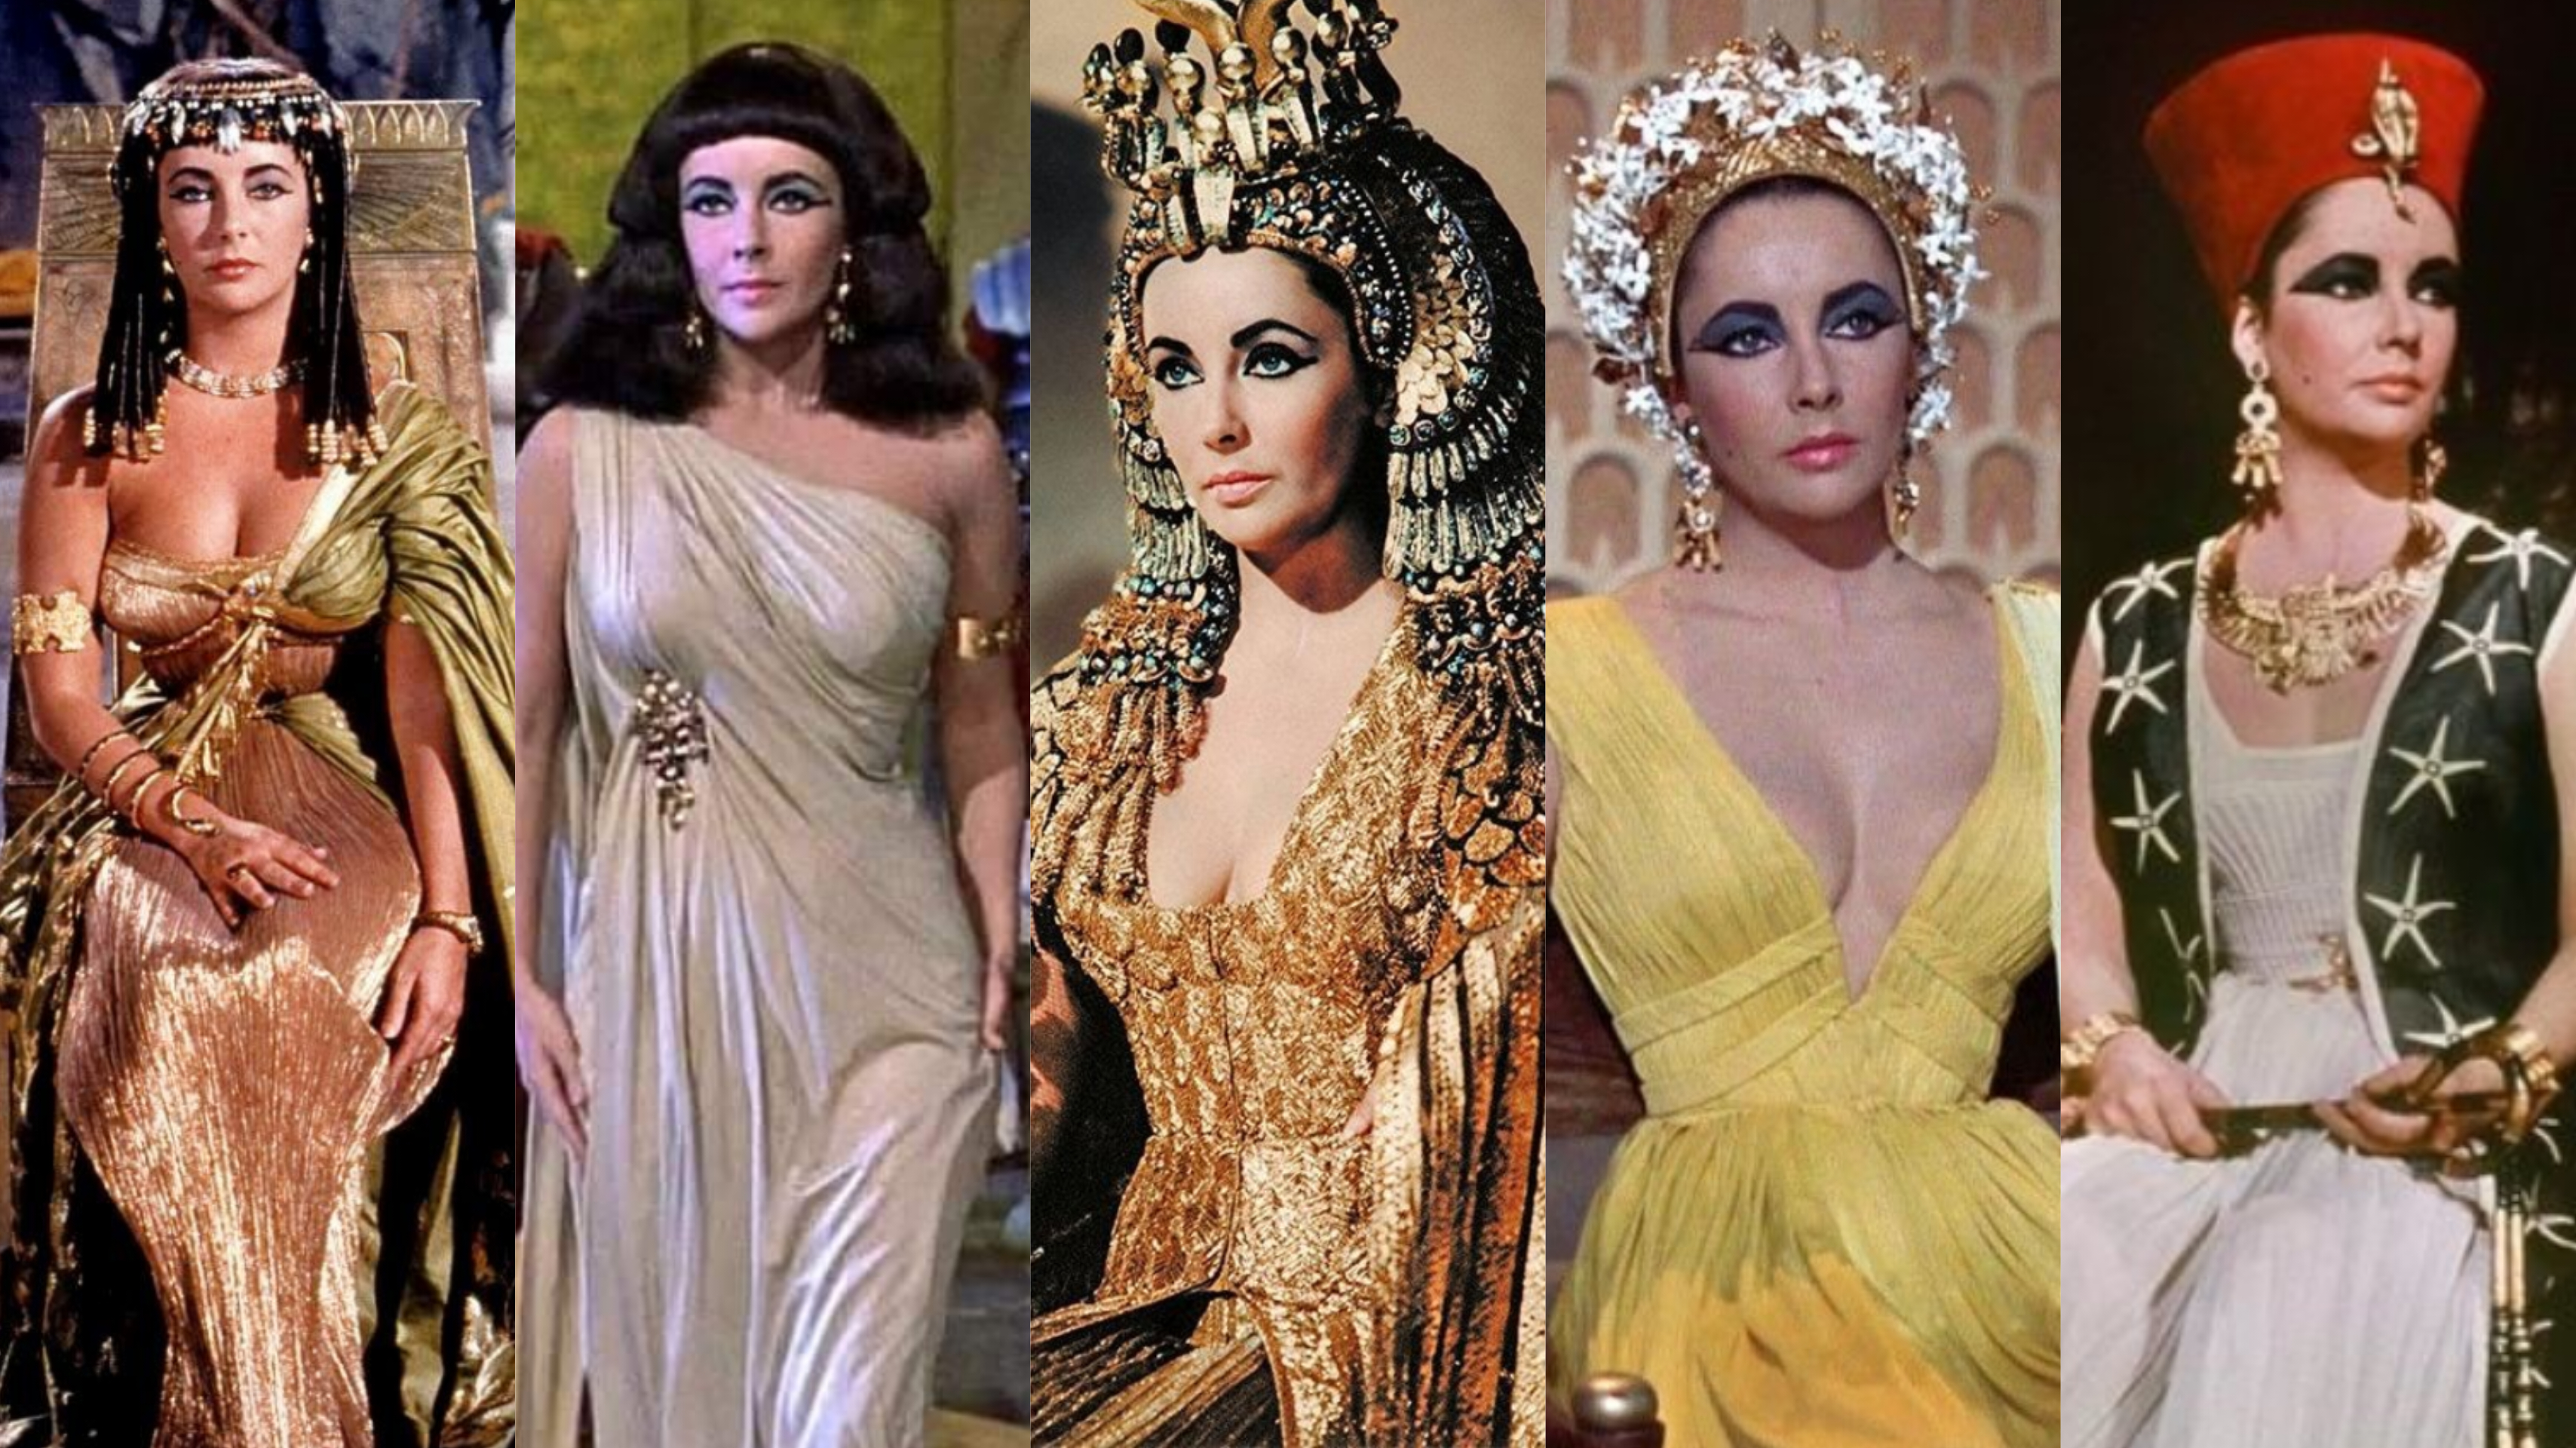 Cleopatra 1963' หนังสไตล์จัดจ้านในตำนาน ที่เปลี่ยนภาพจำของคลีโอพัตรา บนหน้าประวัติศาสตร์ไปตลอดกาล